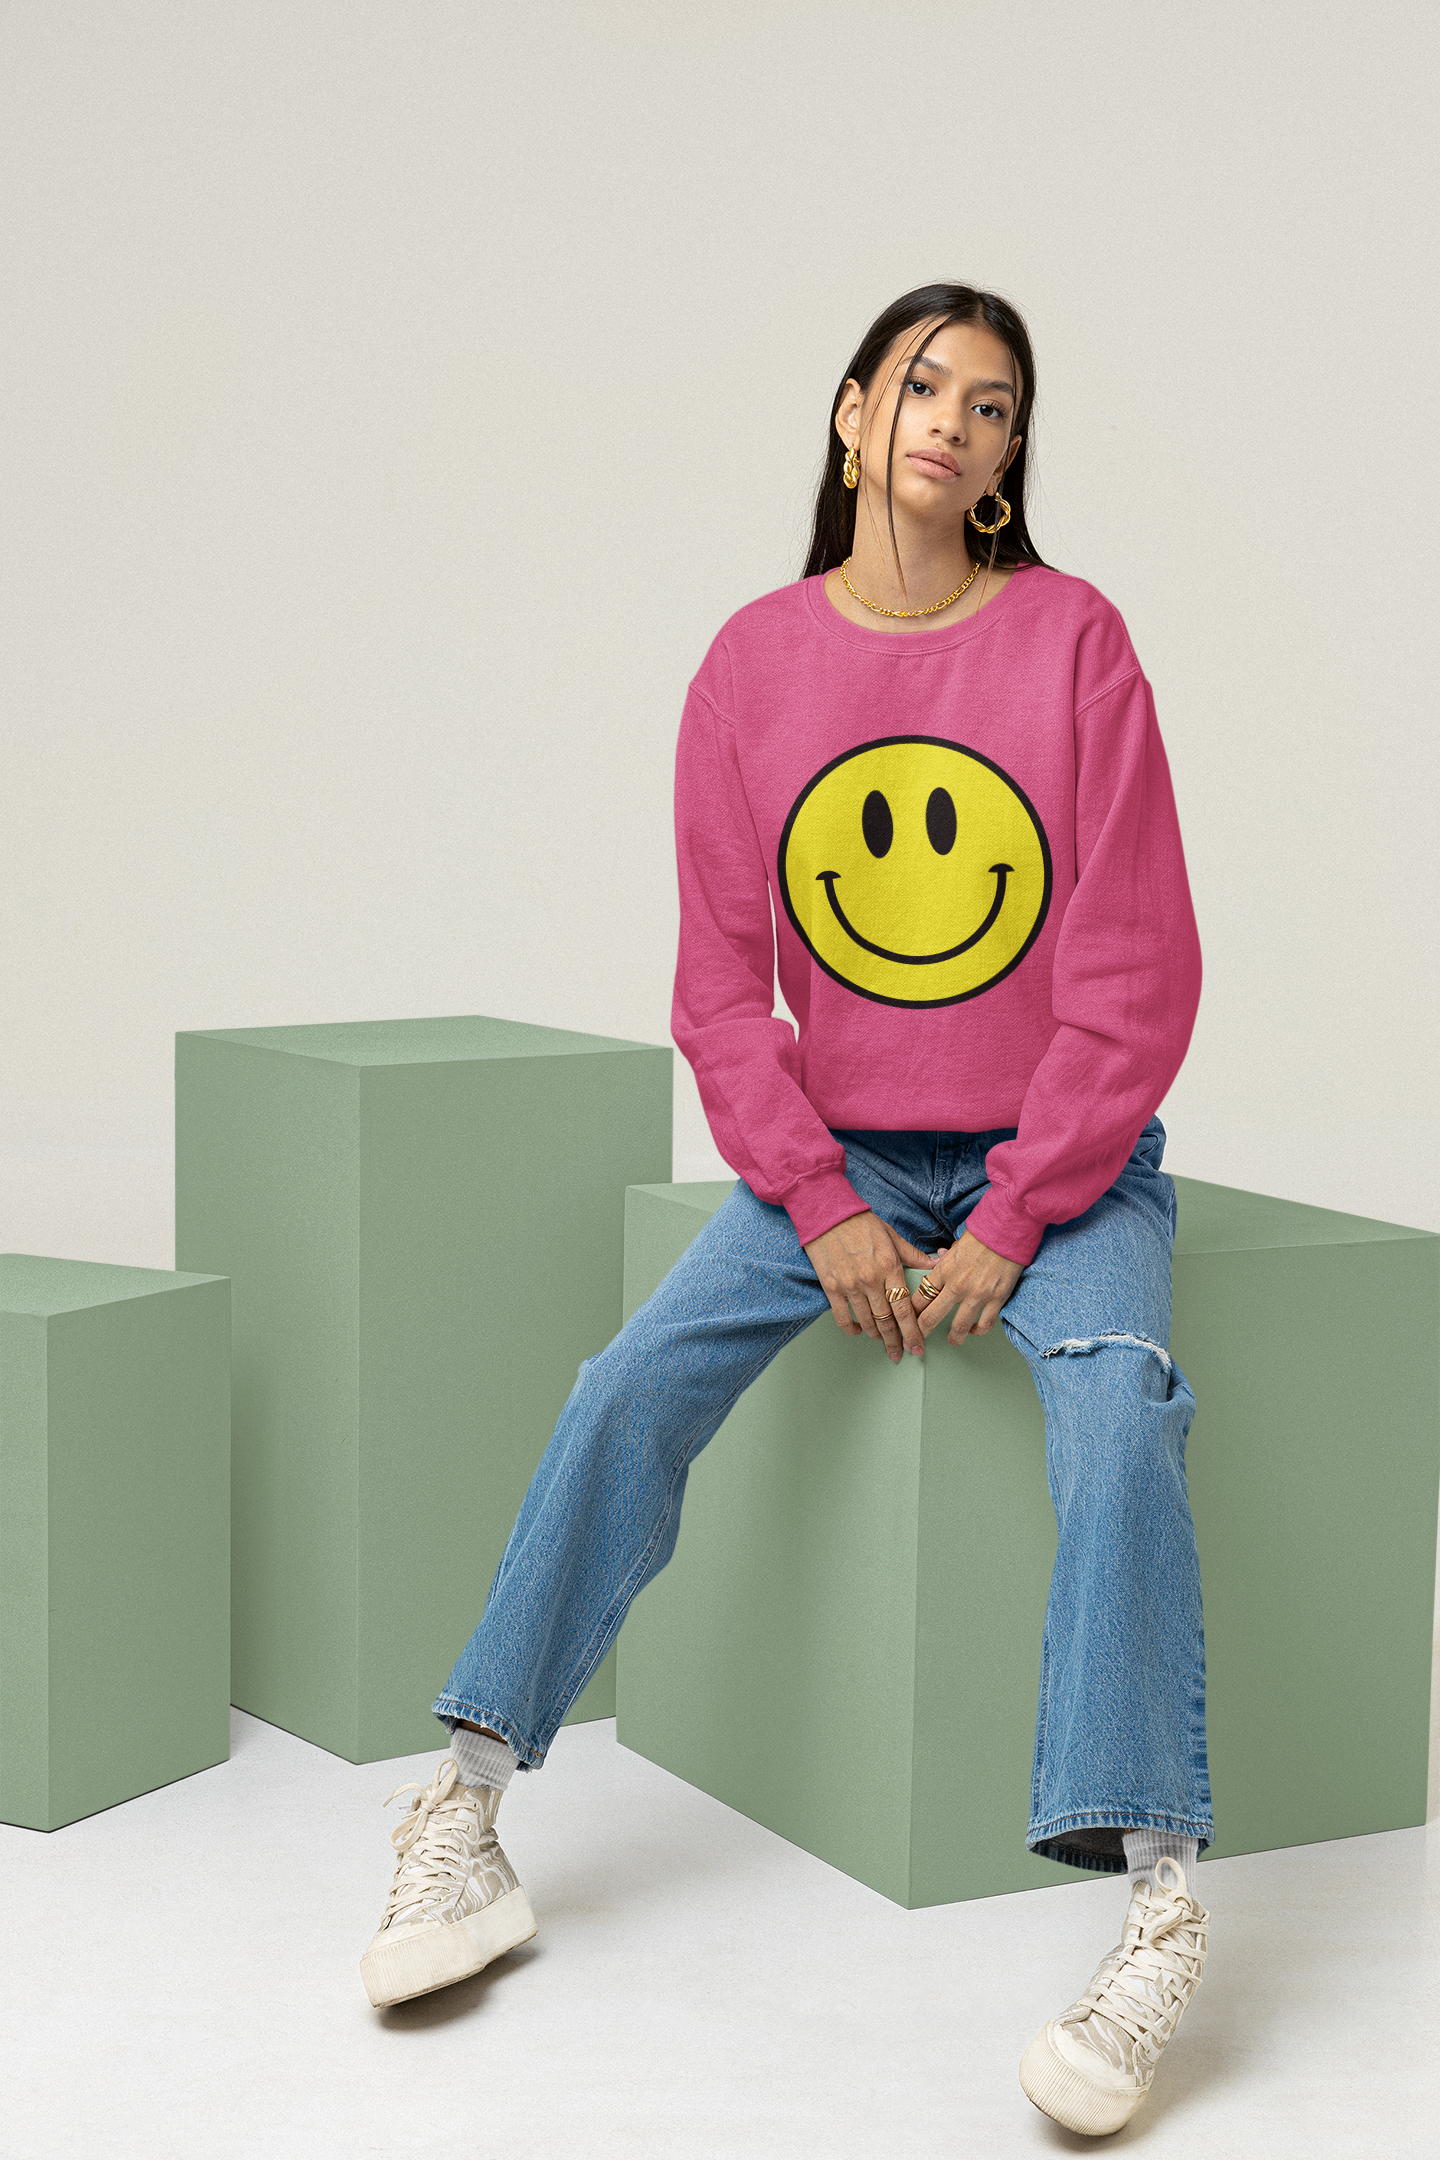 Smiley Face Sweatshirt